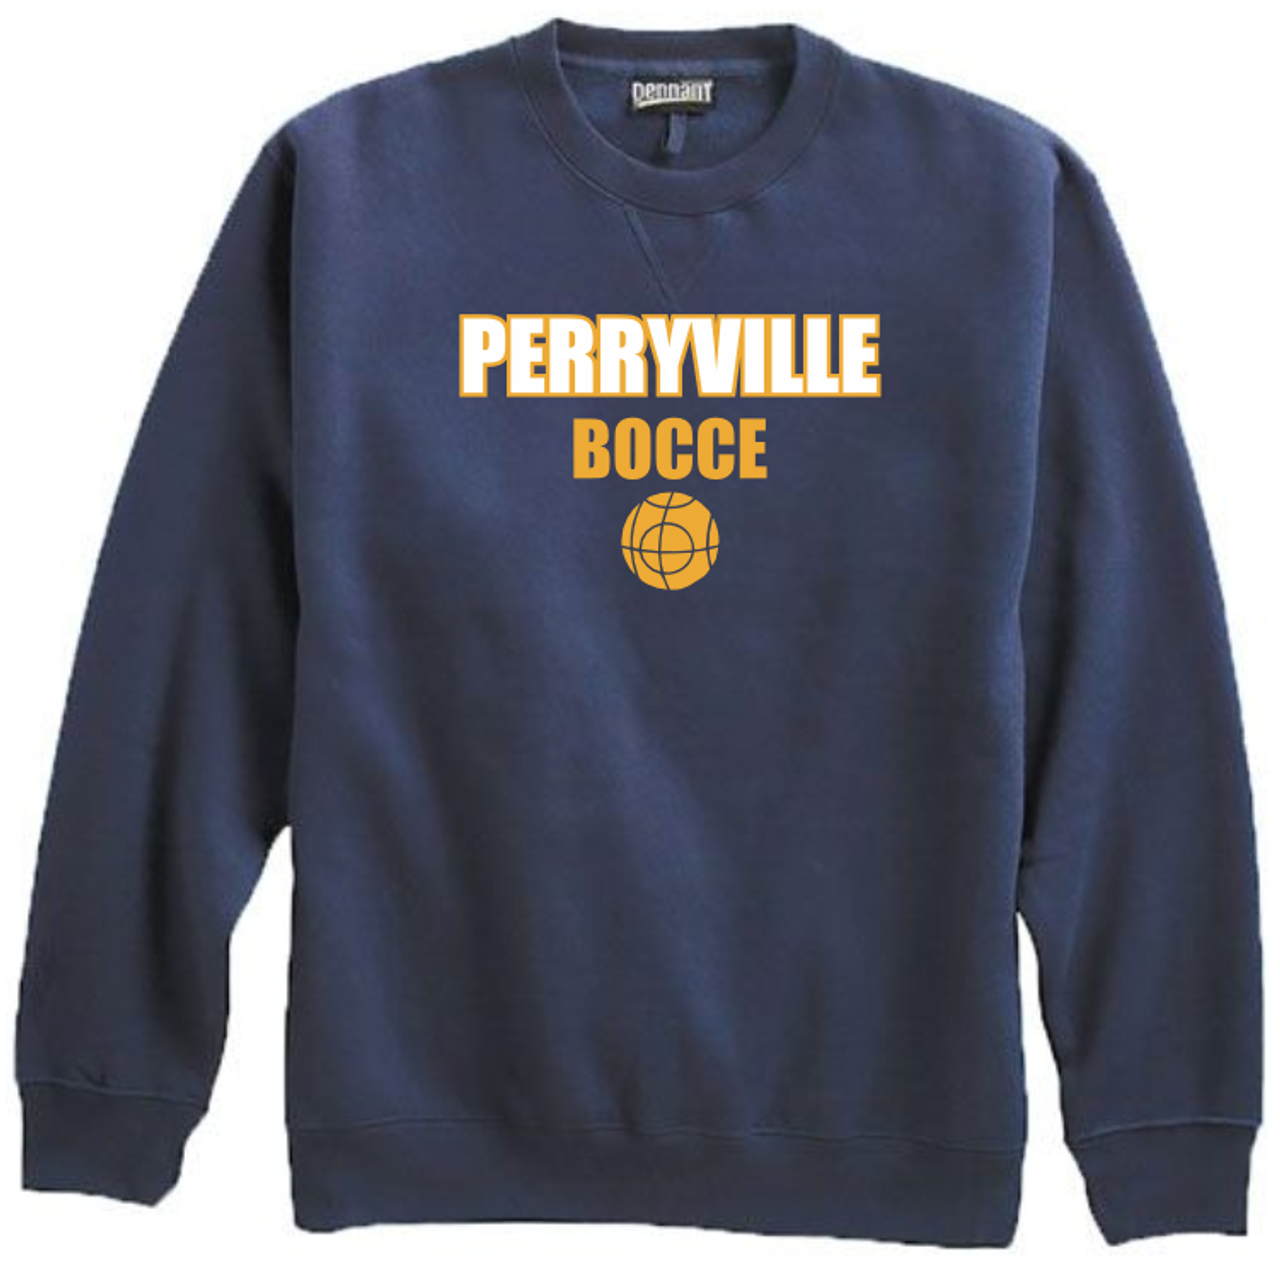 Perryville MS Bocce Crewneck Sweatshirt, Navy